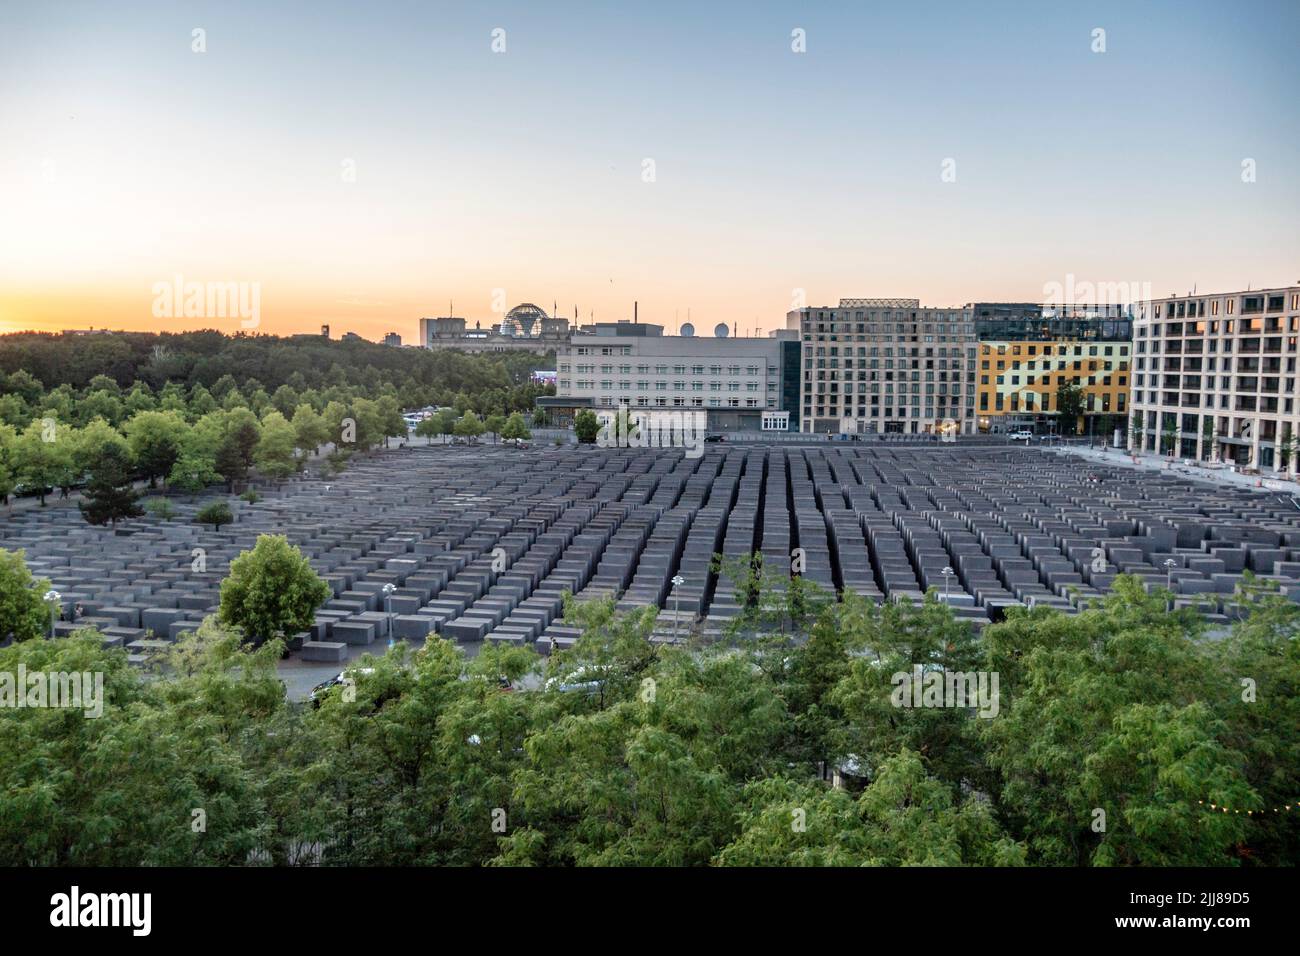 Blick von oben auf holocauste-Denkmal, Denkmal für die ermordeten Juden Europas, Stelenfeld, Sonnenuntergang, Berlin-Mitte, Allemagne Banque D'Images